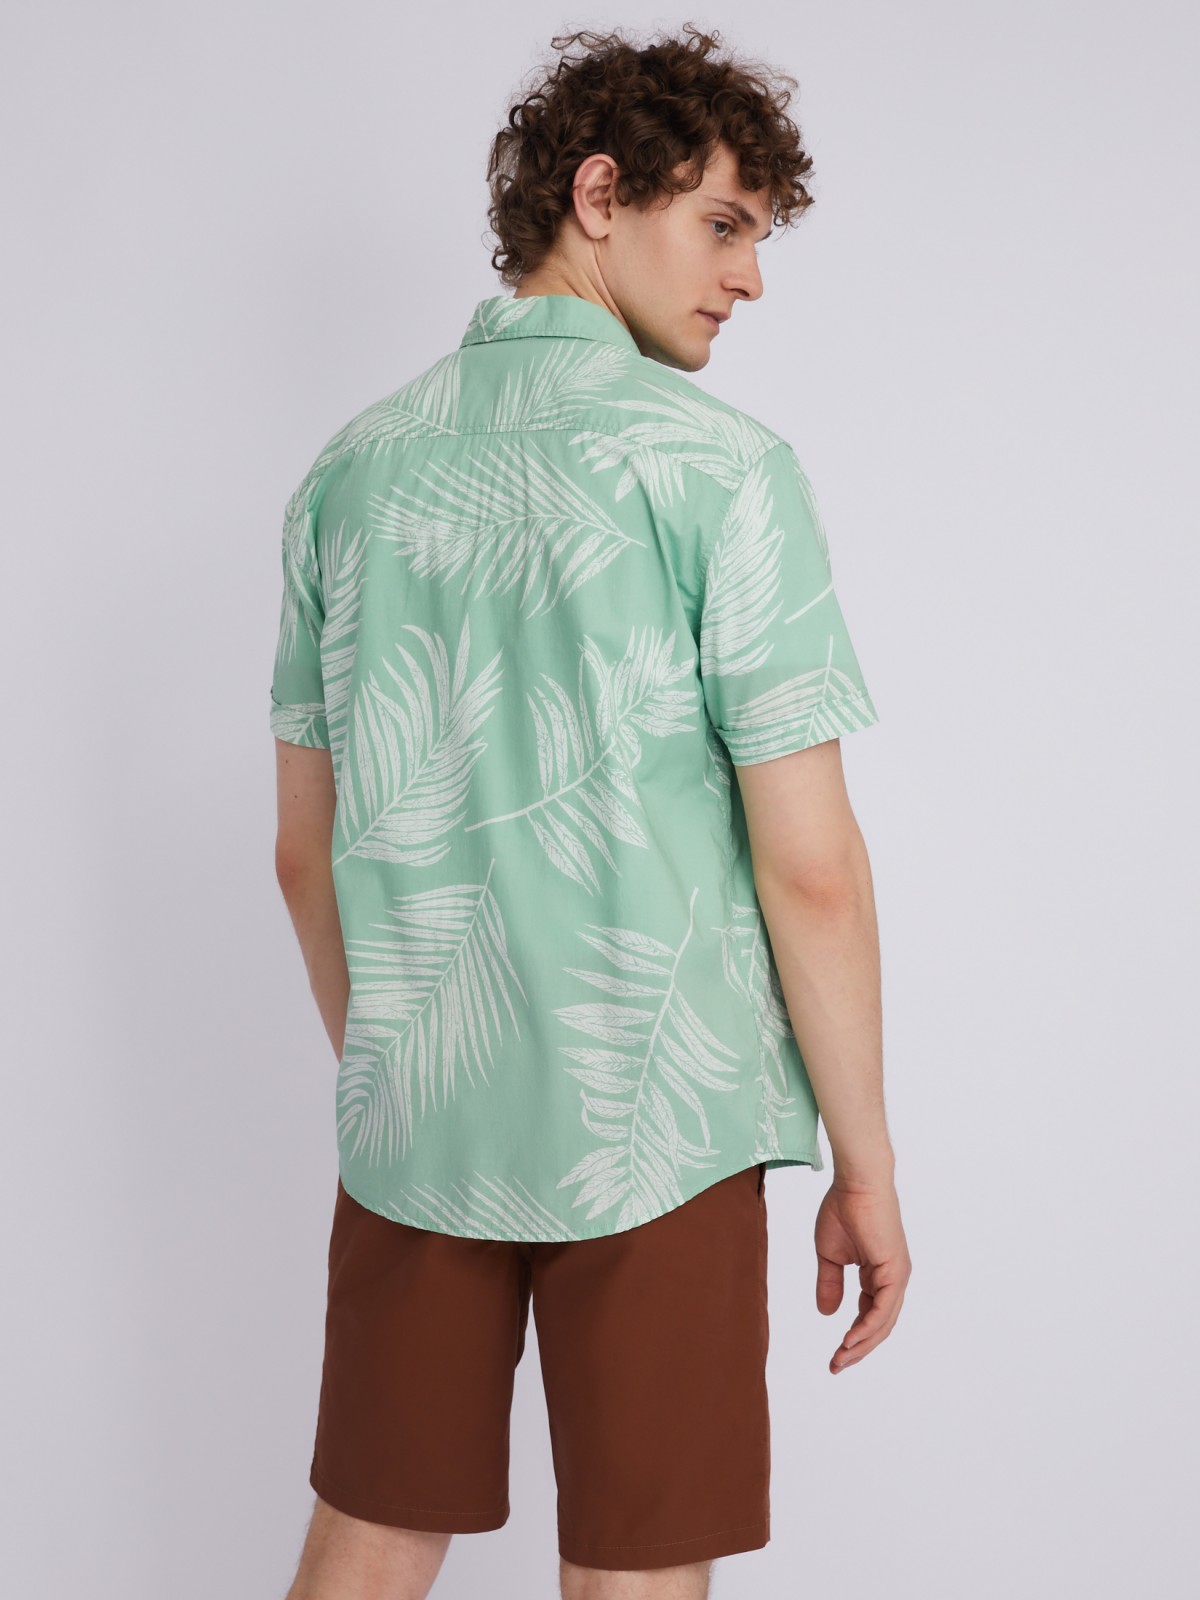 Рубашка из хлопка с принтом zolla 21325224R051, цвет зеленый, размер S - фото 5